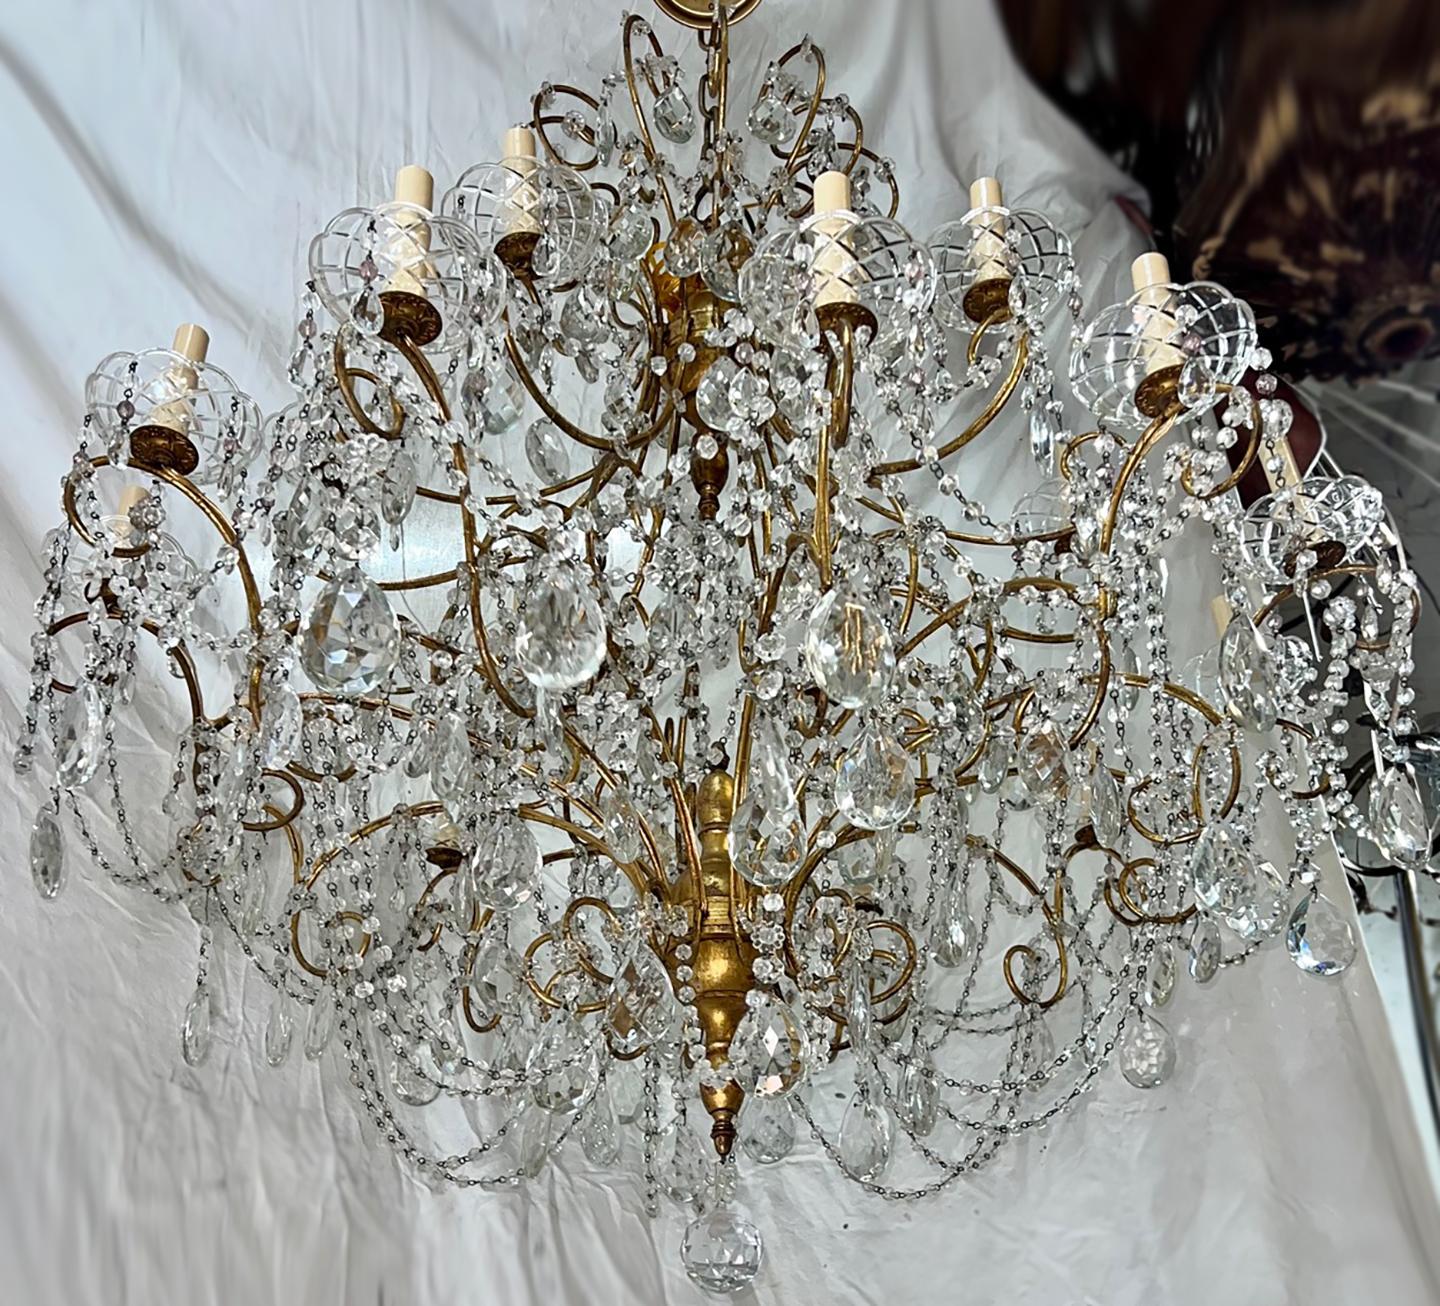 Lustre italien des années 1920 avec pendentifs en cristal et 18 lampes candélabres.

Mesures :
Hauteur : 36
Diamètre : 44